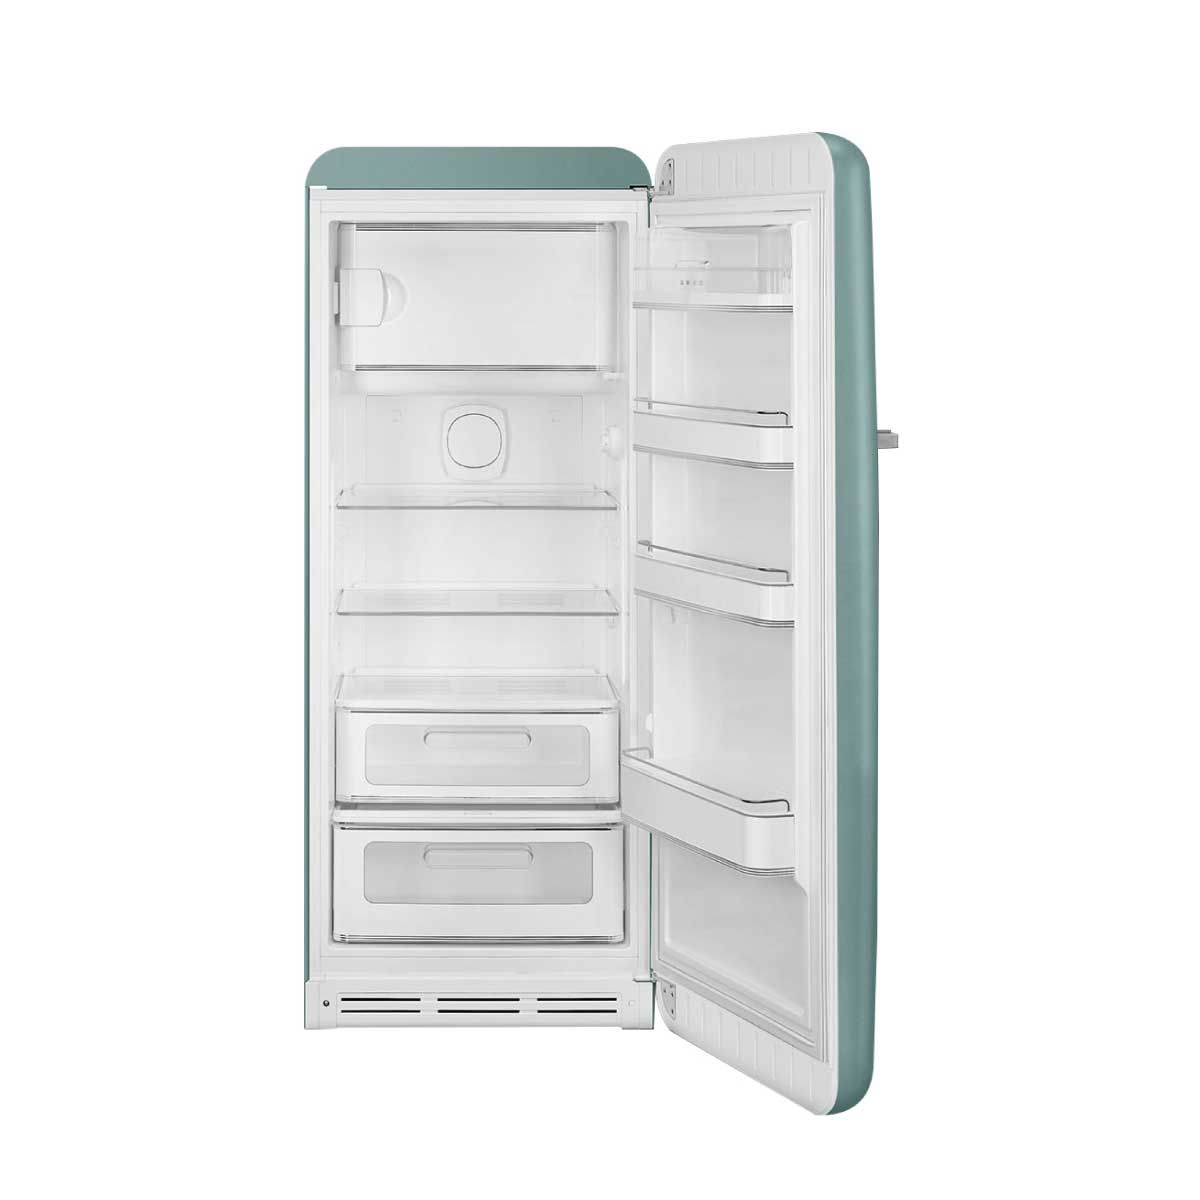 SMEG ตู้เย็น 1 ประตู 9.53 Q.สไตล์ 50 Retro Aesthetic รุ่น FAB28RDEG5 เขียวเอมเมอรัล